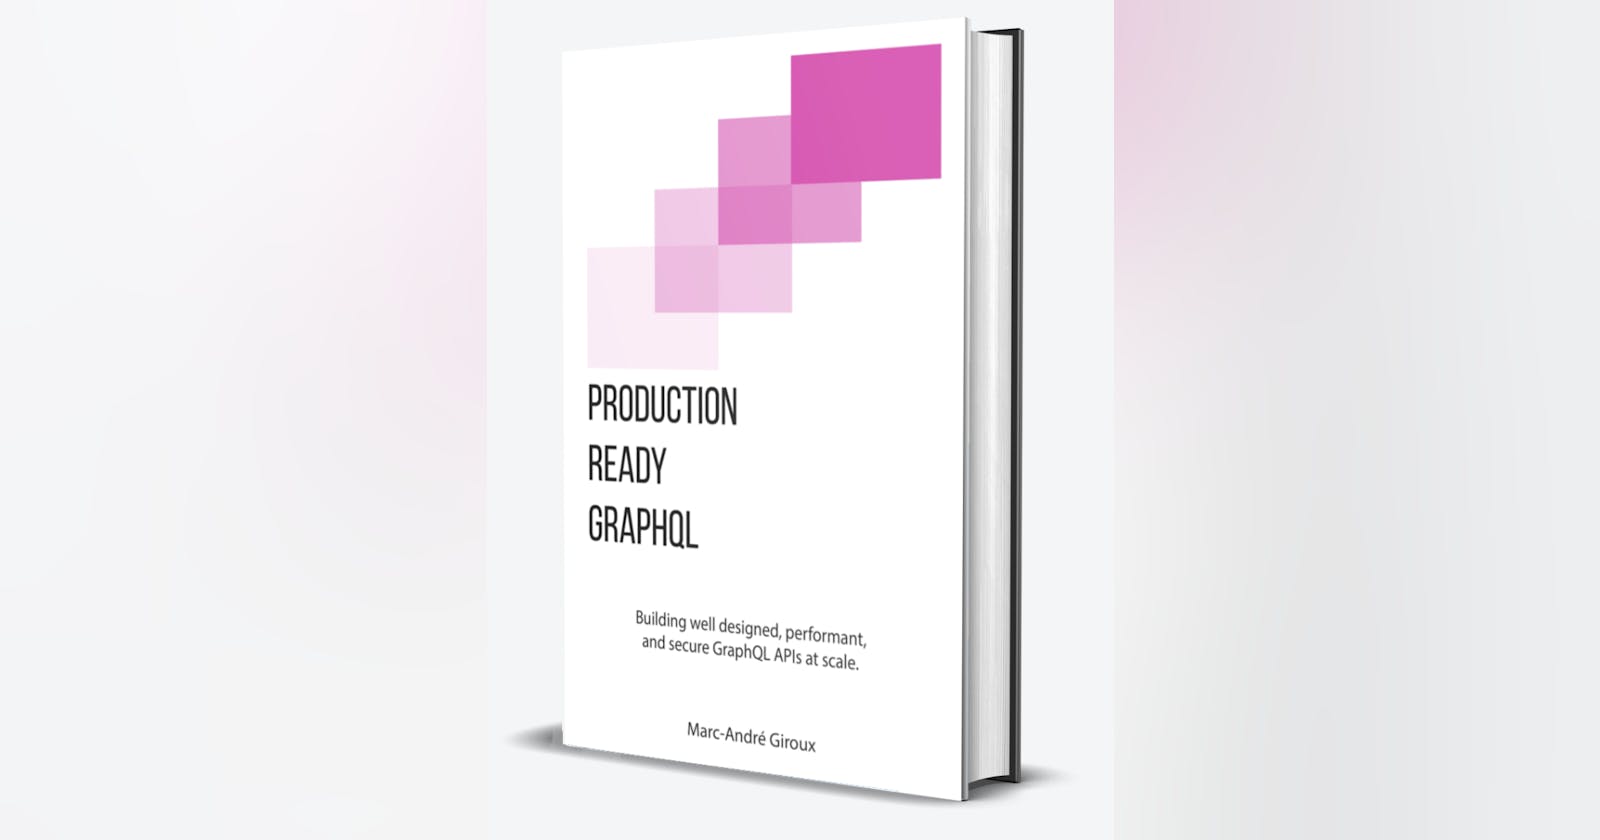 Production Ready GraphQL Summary — Part I